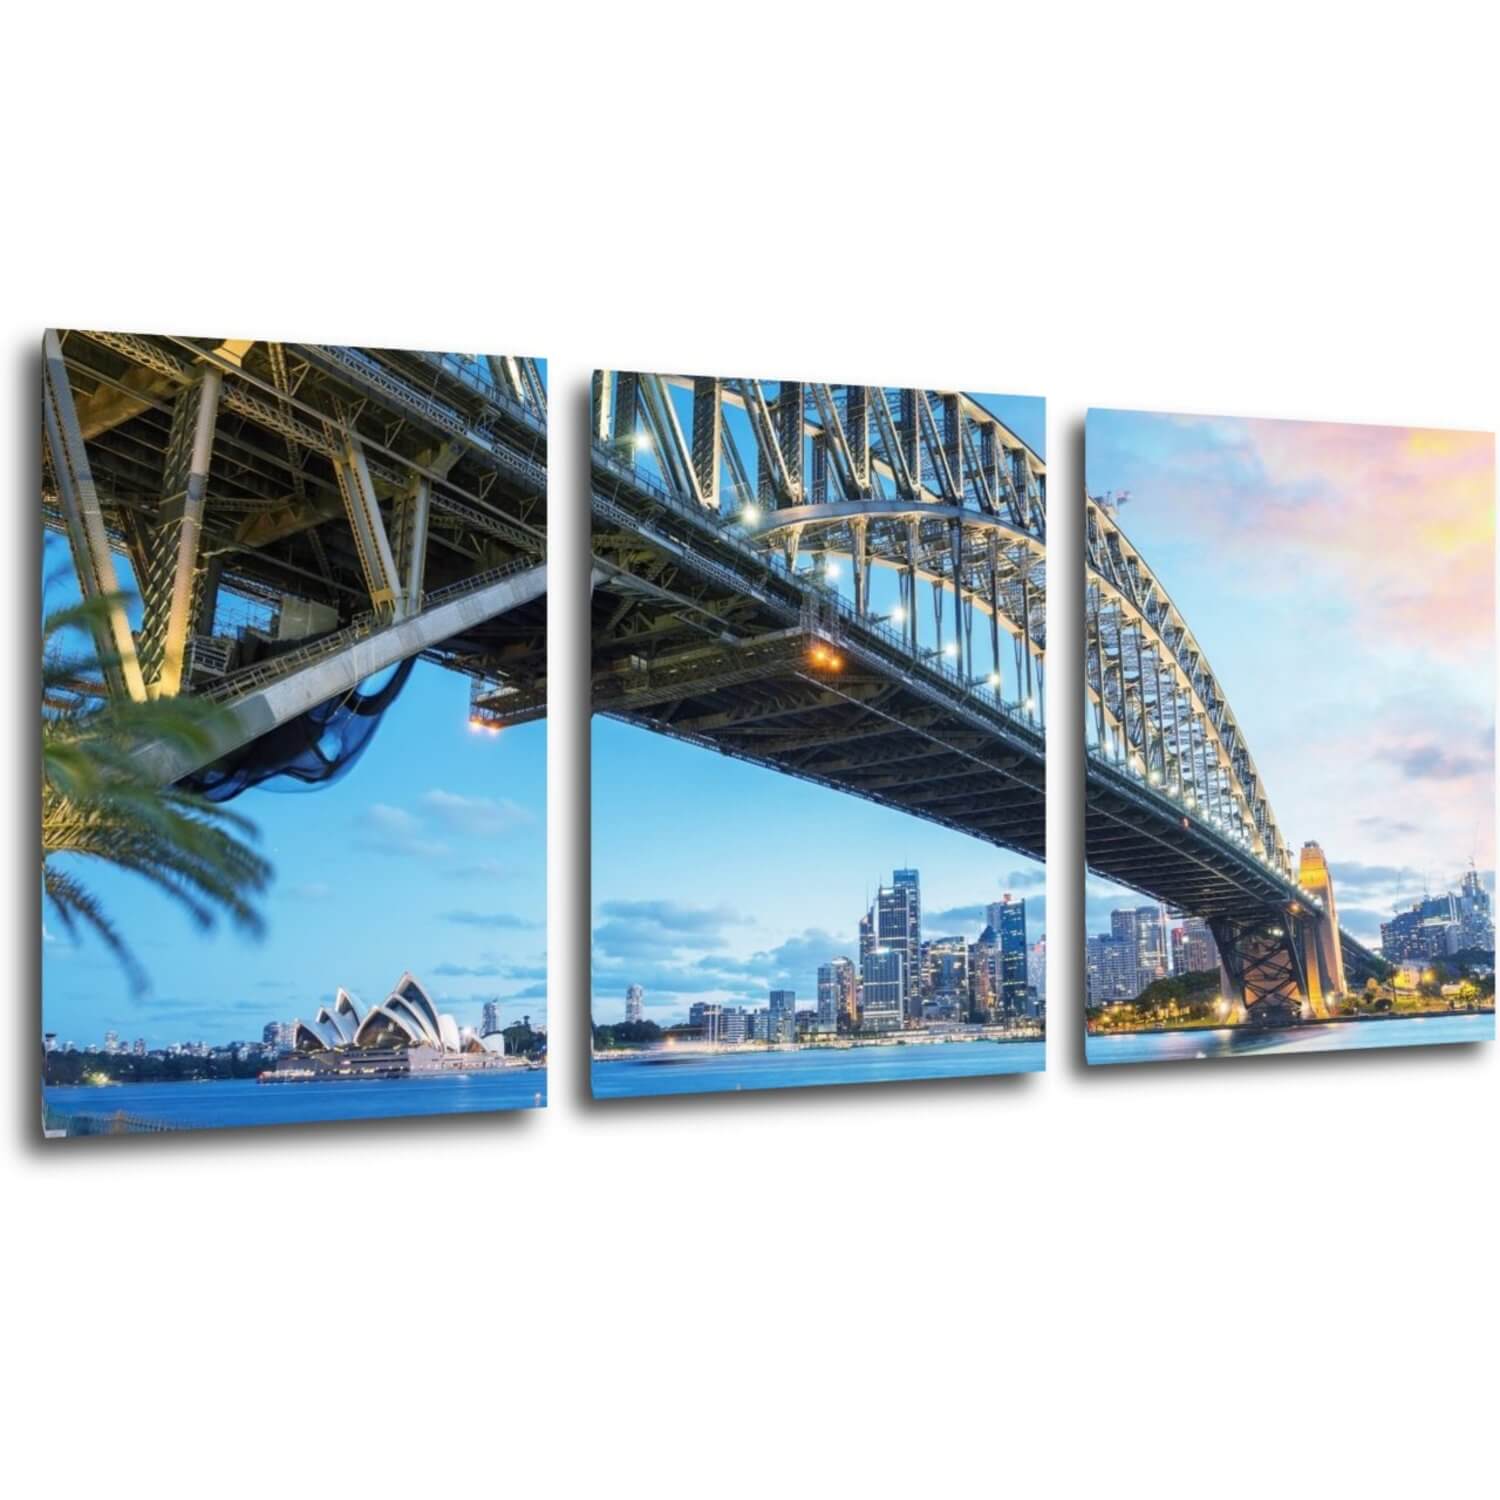 Obraz Osvietený most - 150 x 70 cm (3 dielny)